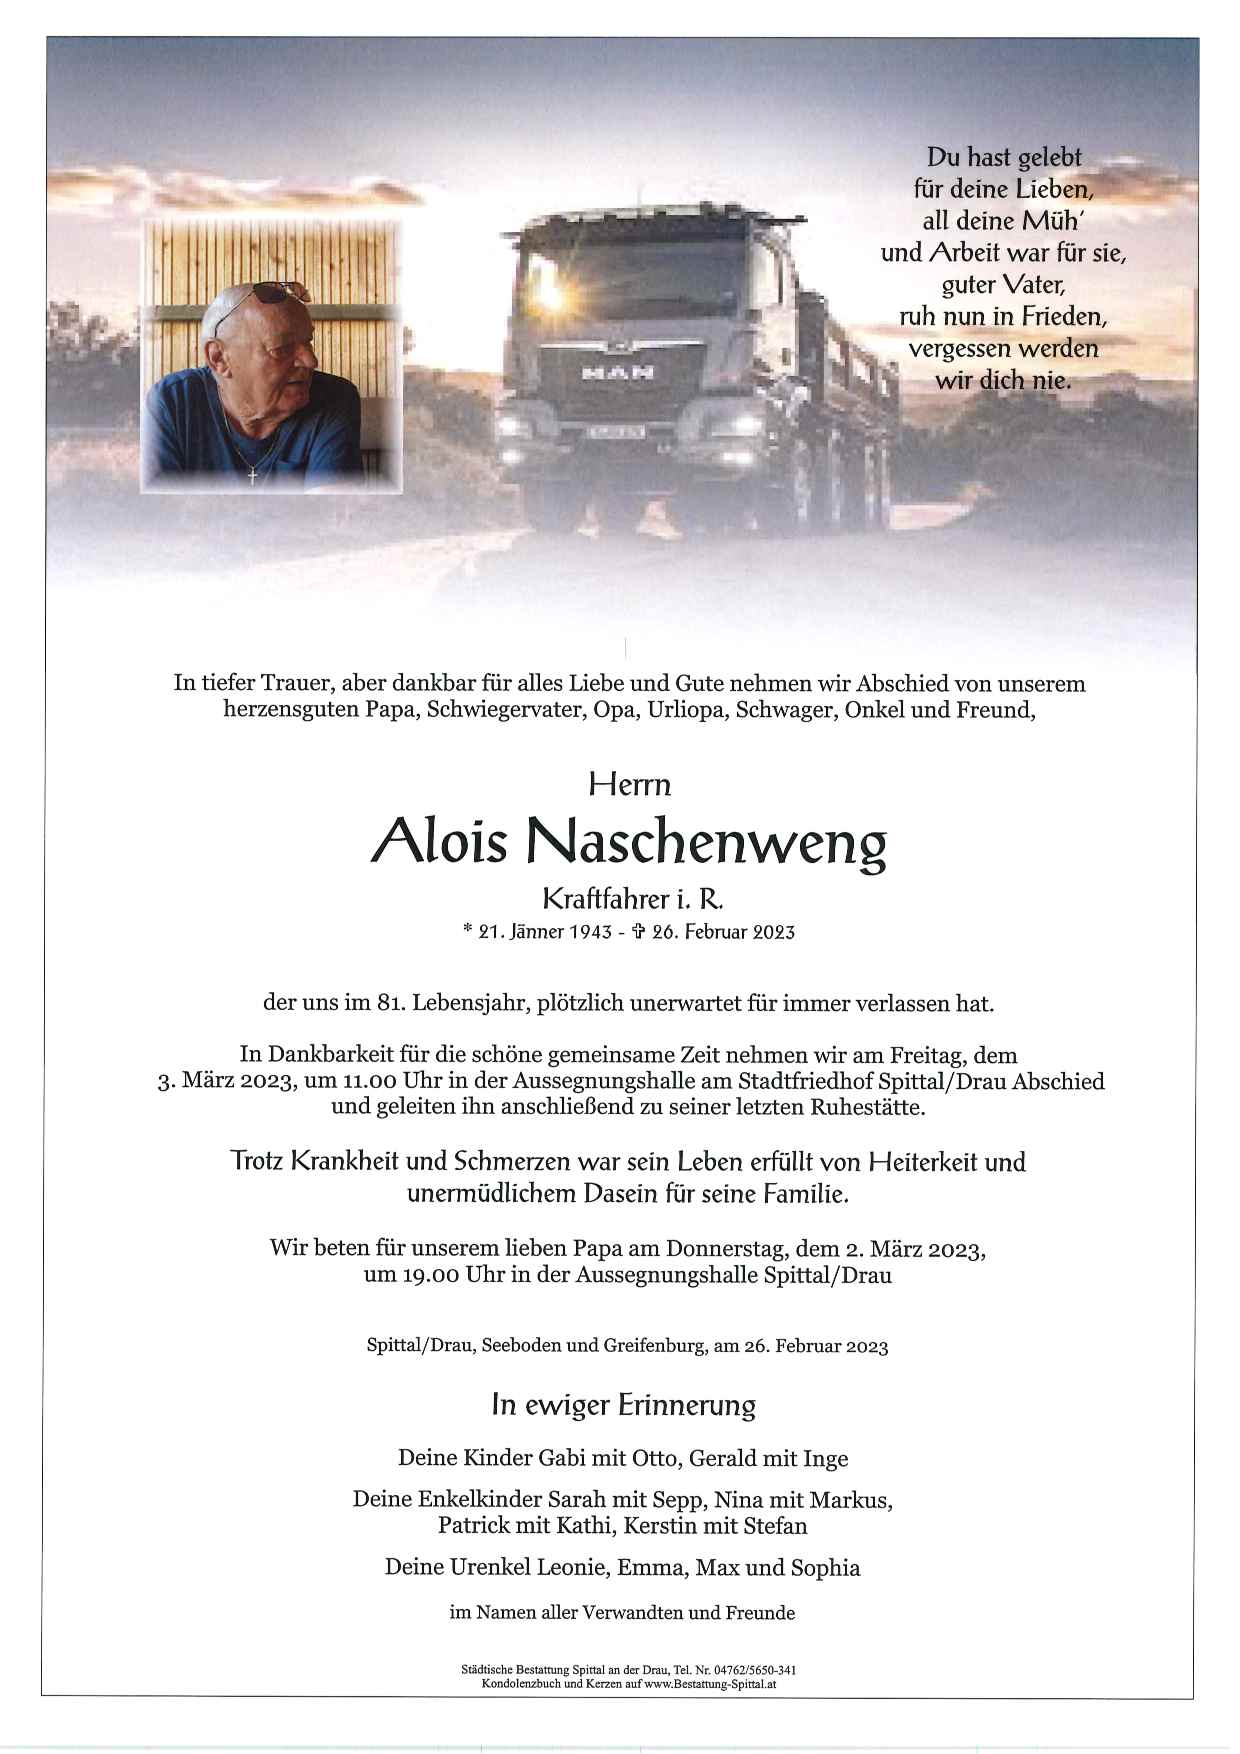 Alois Naschenweng